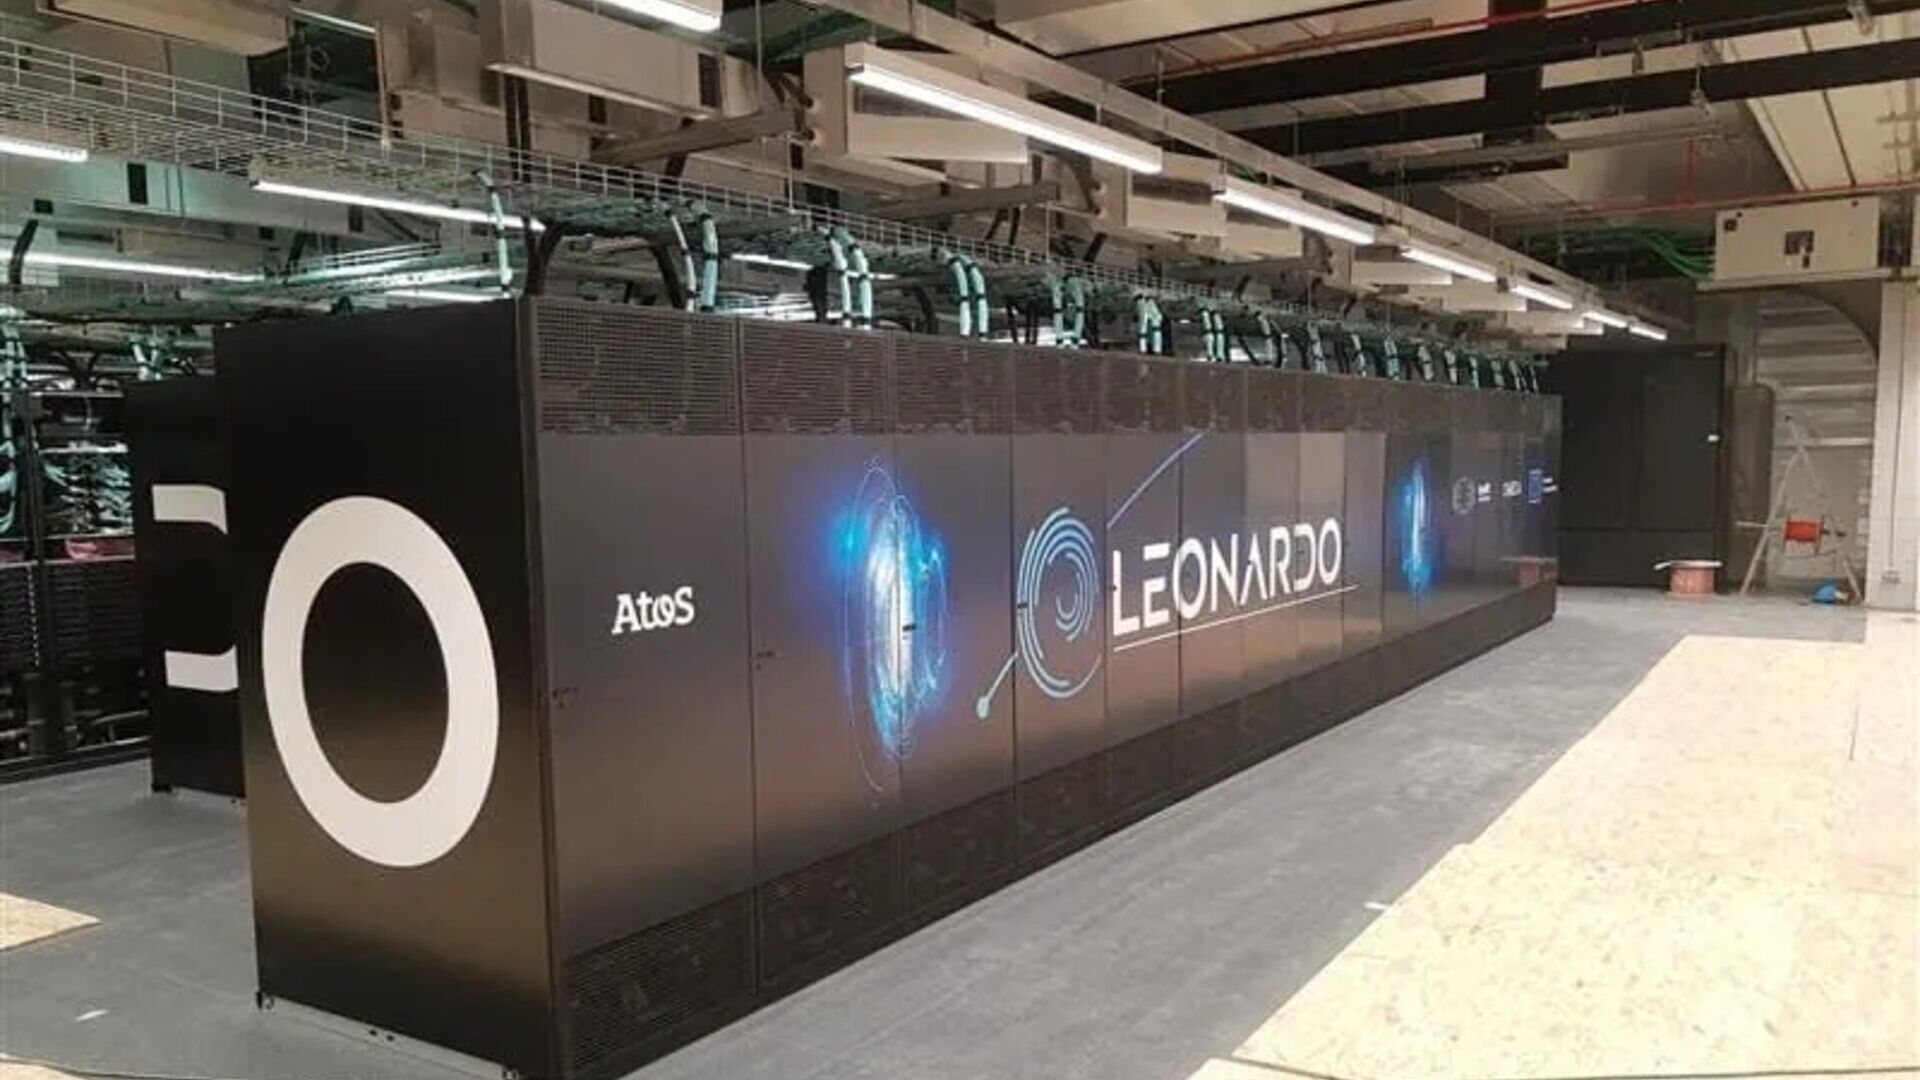 Leonardo-superdatamaskinen inne i bygningen i Big Data Technopole i Bologna